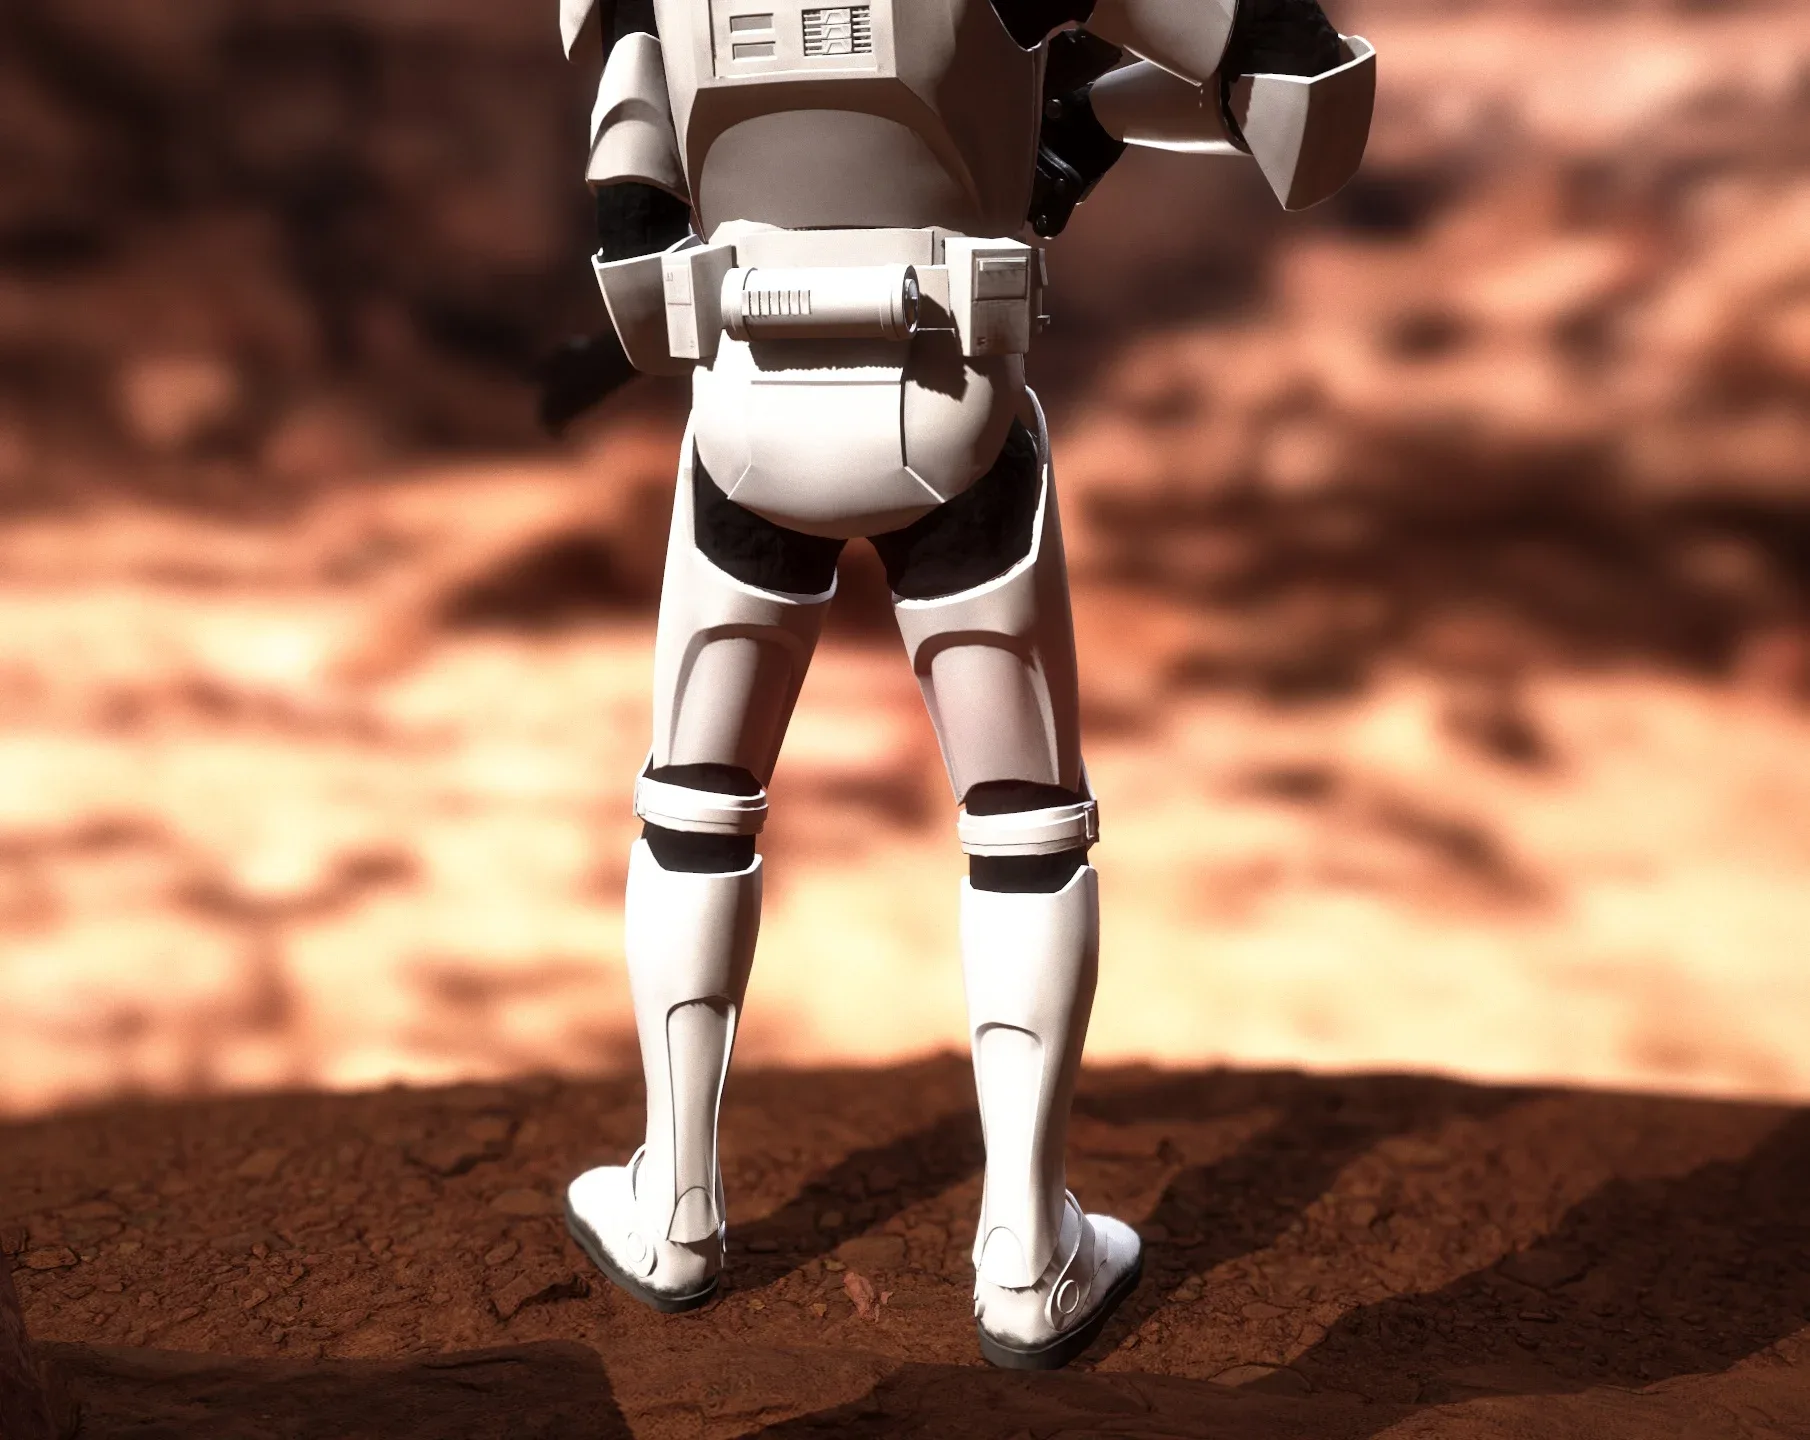 Clone Trooper Rigged